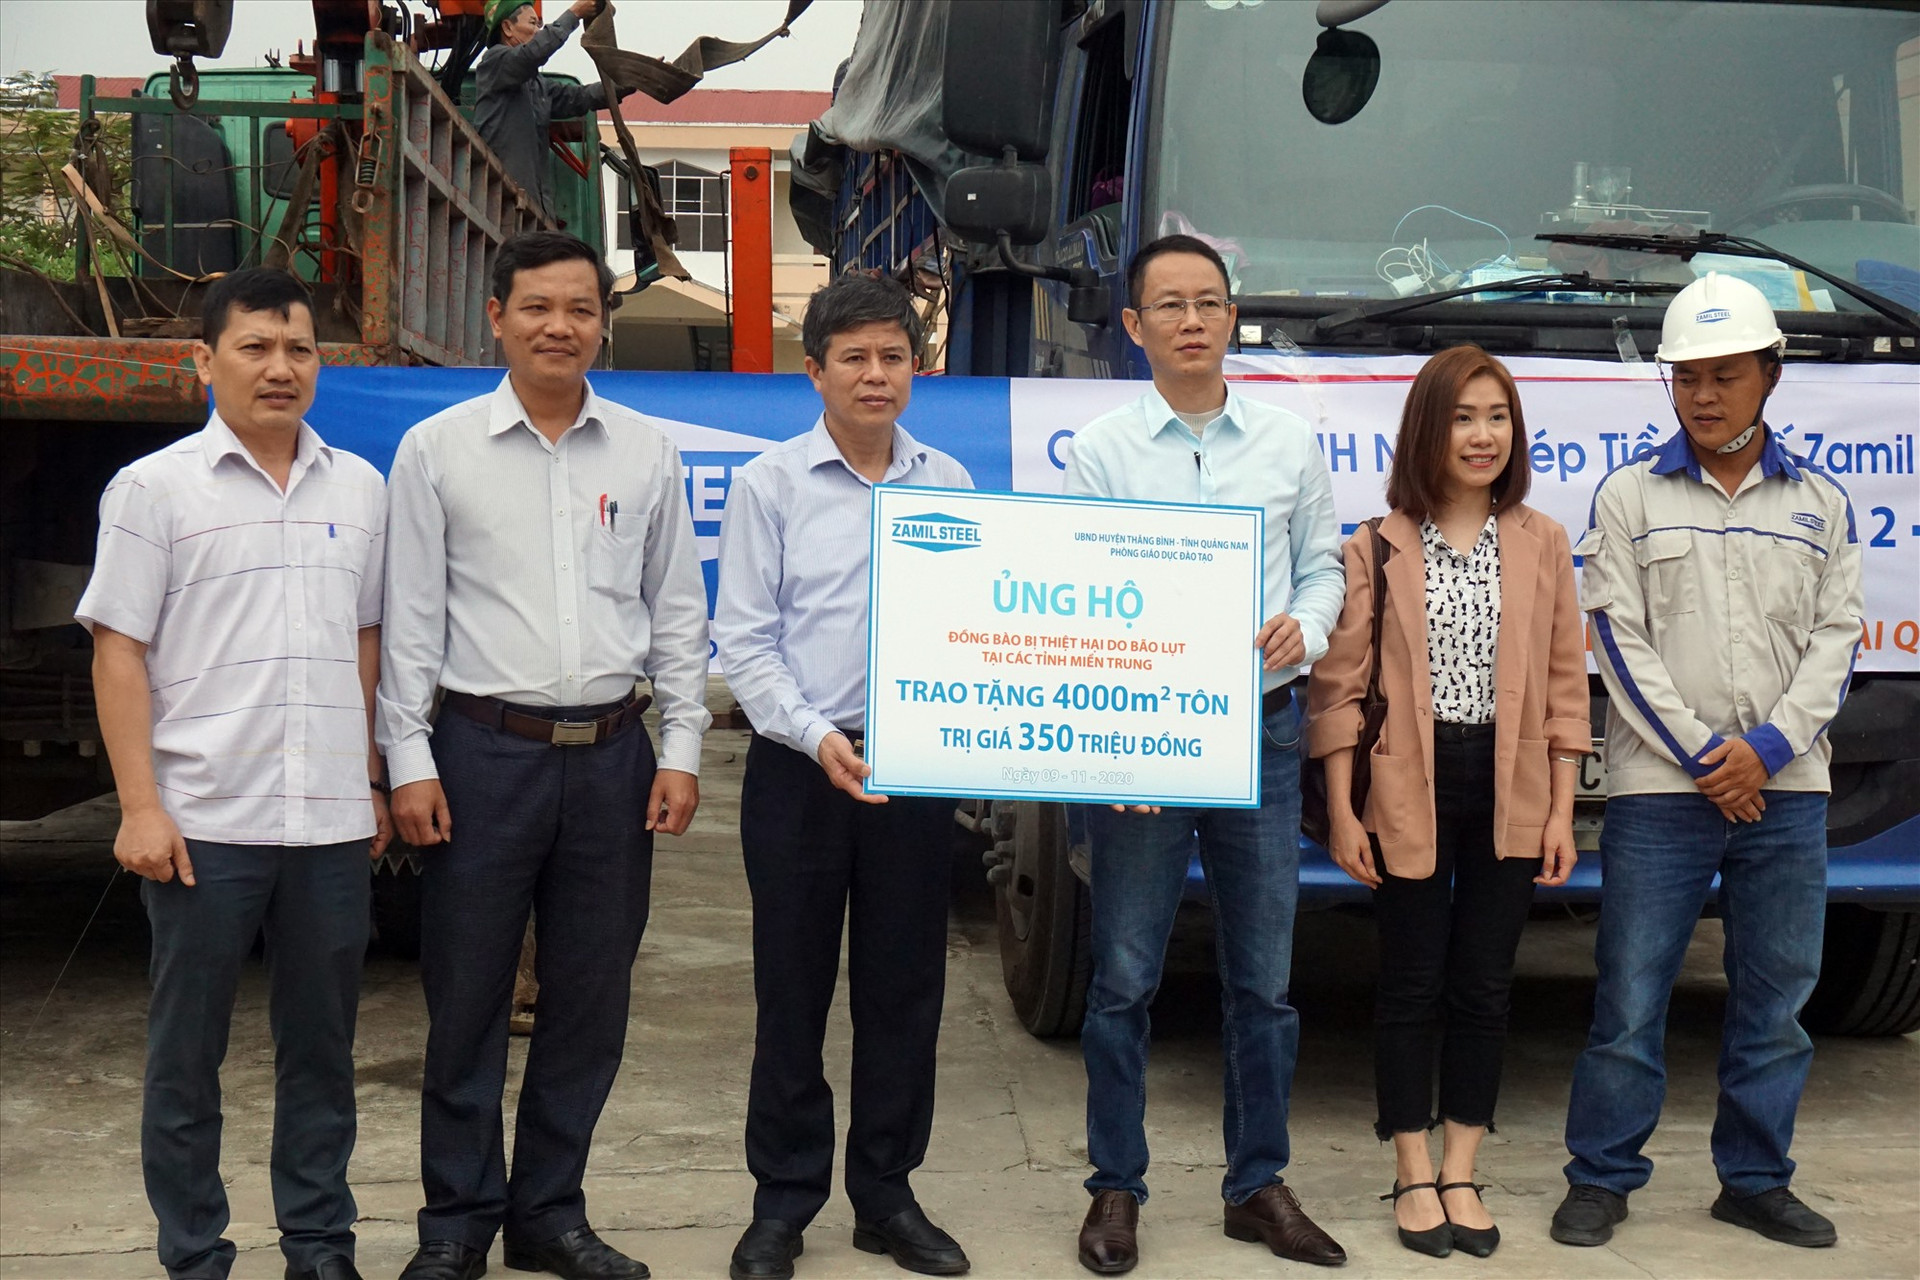 Huyện Thăng Bình tiếp nhận 4.000m2 tôn trị giá 350 triệu đồng từ phía Công ty TNHH Nhà Thép Tiền chế Zamil Việt Nam.